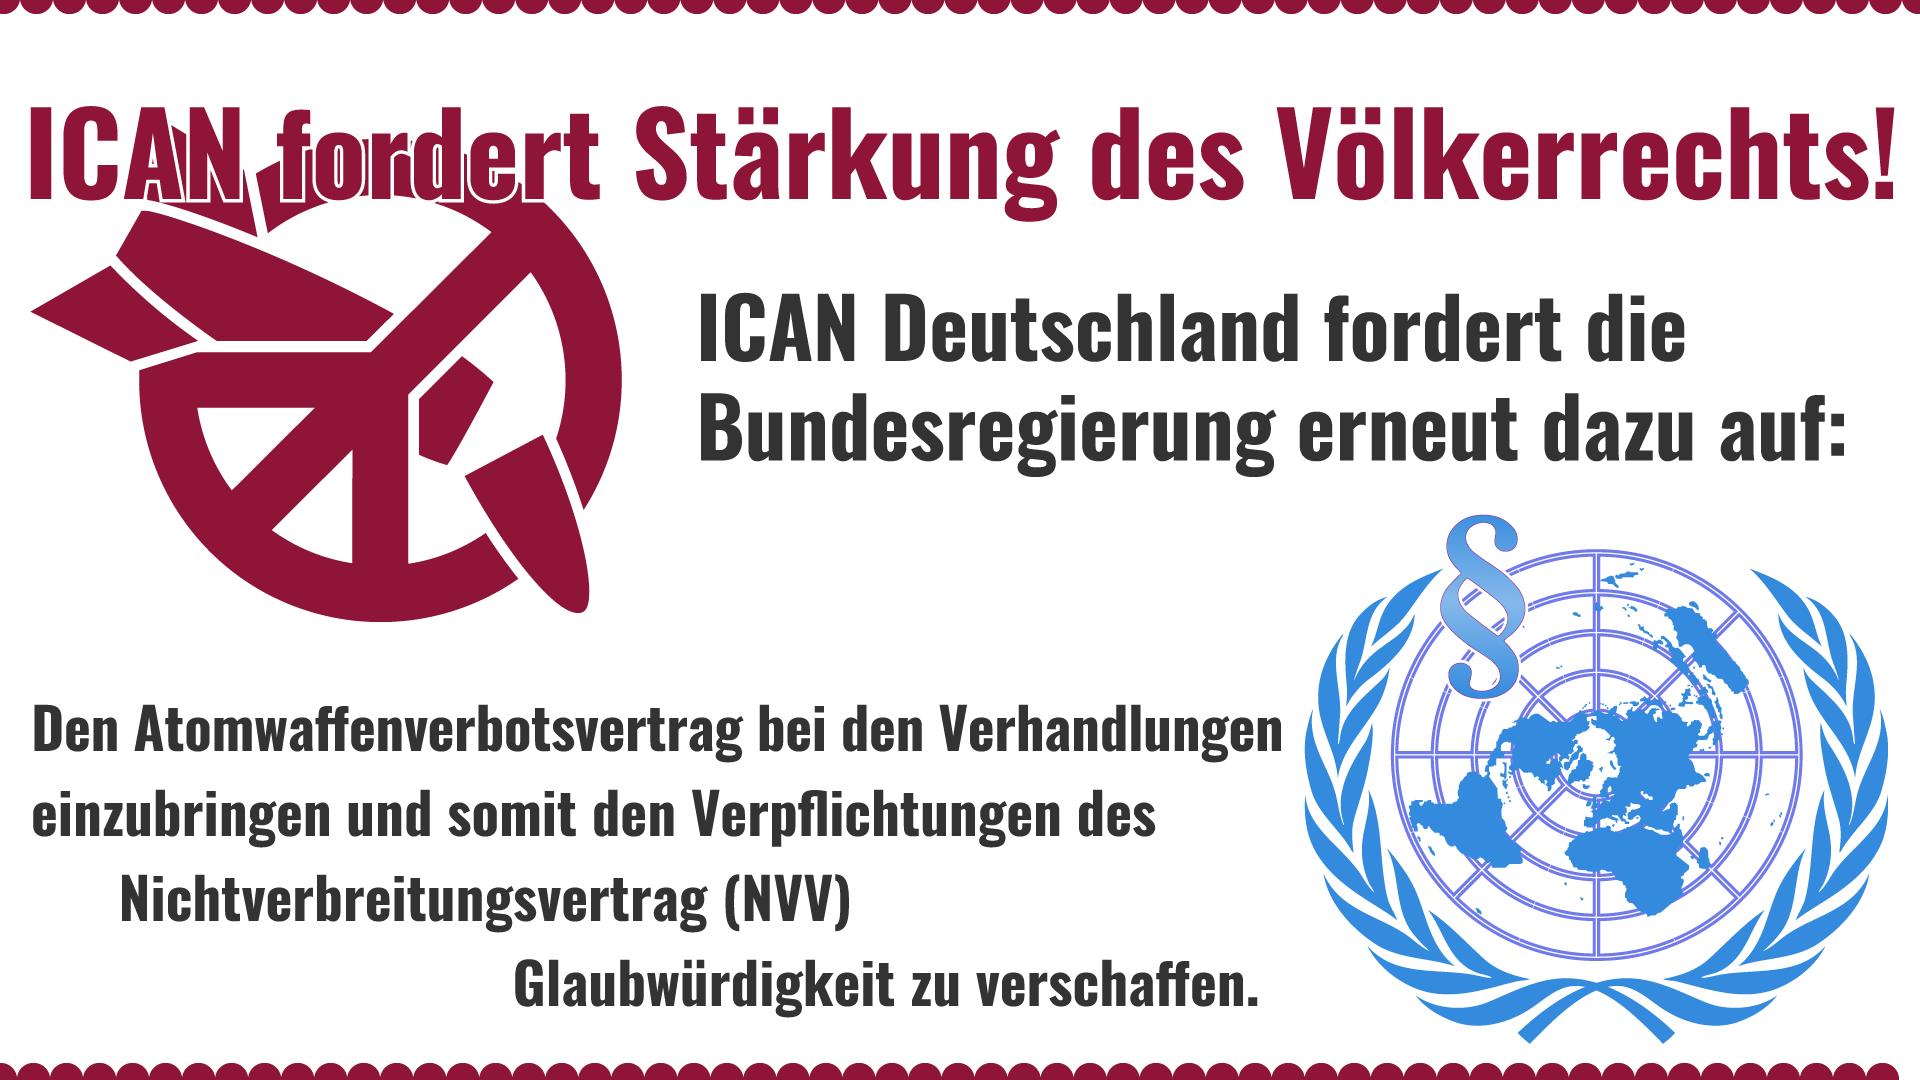 ICAN Deutschland Nichtverbreitungsvertrag (NVV), Atomwaffenverbotsvertrag.